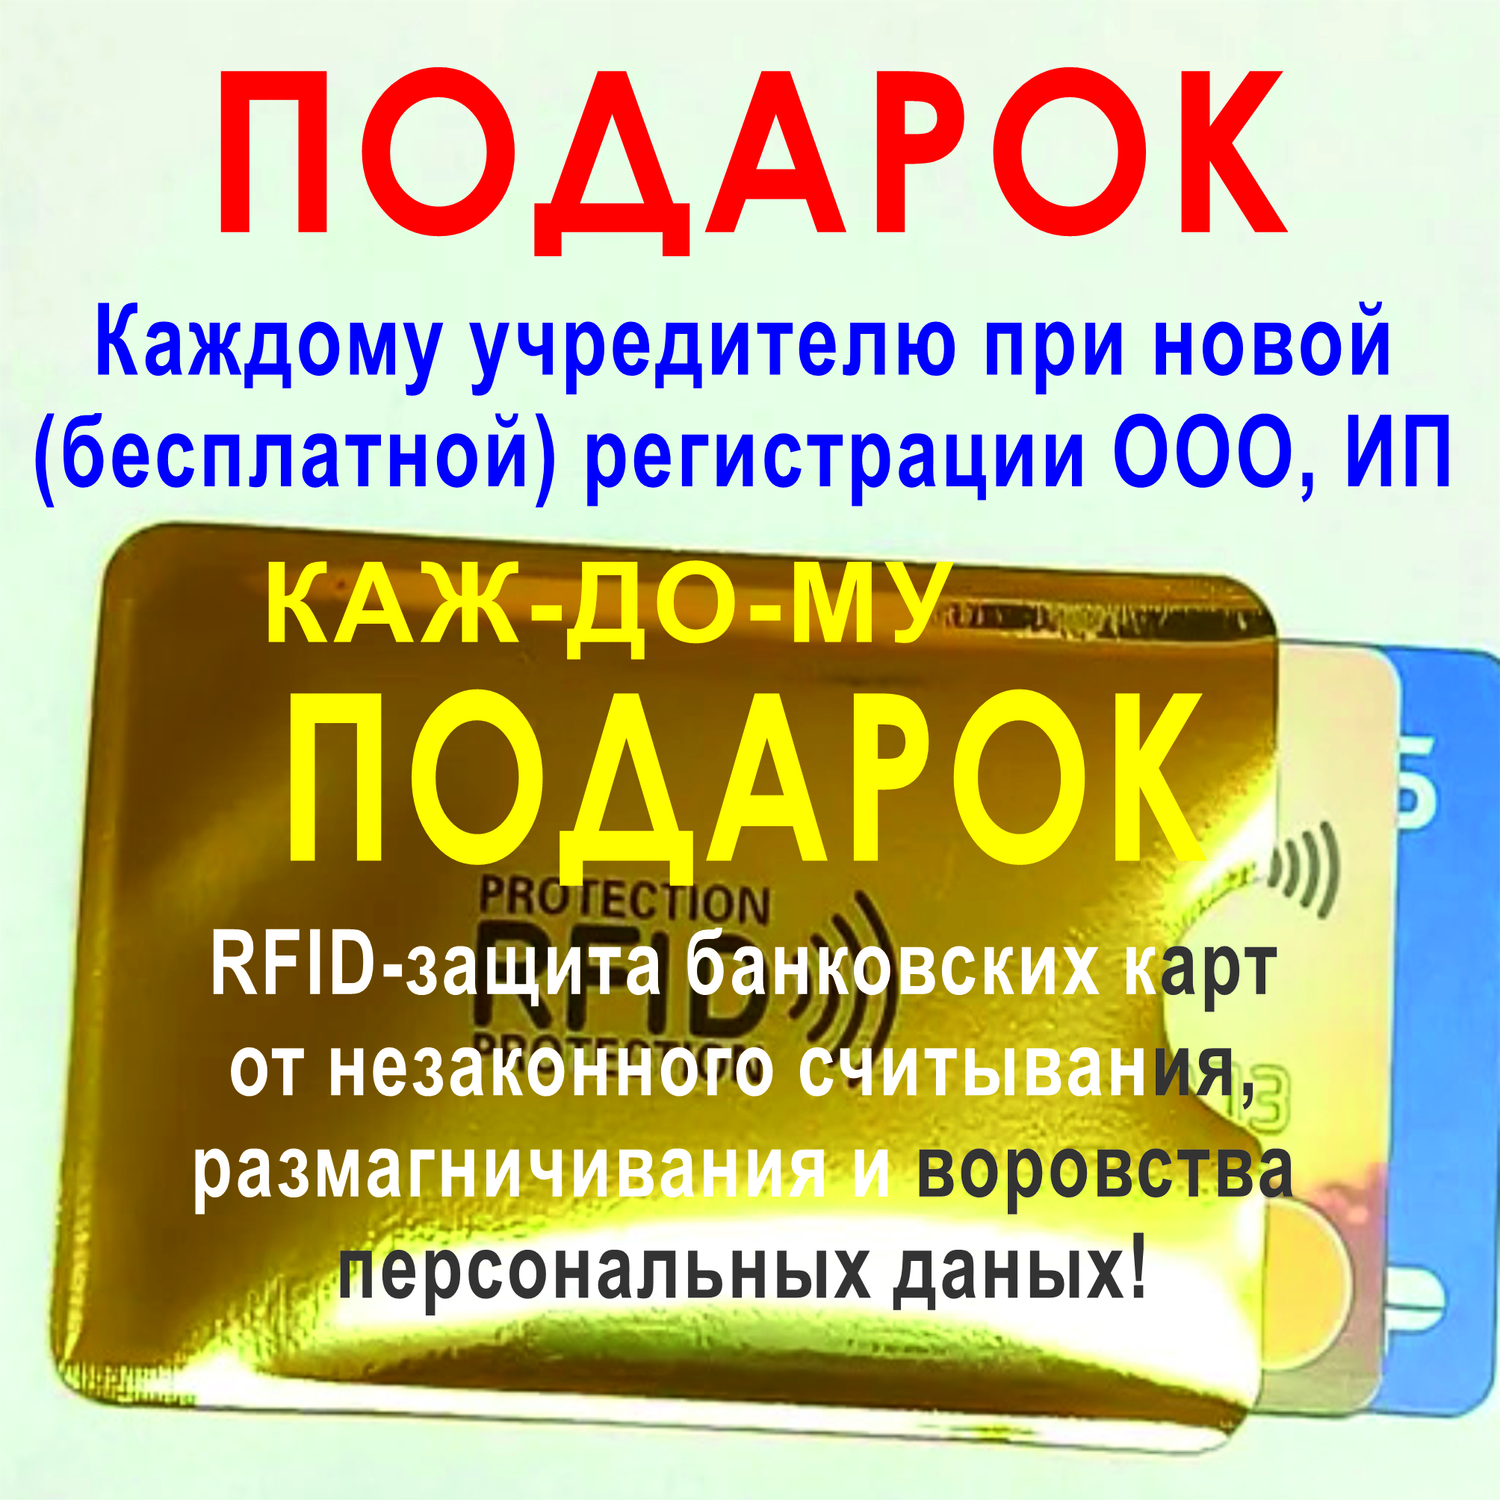 Регистрация ООО онлайн в Ярославле налоговая госуслуги